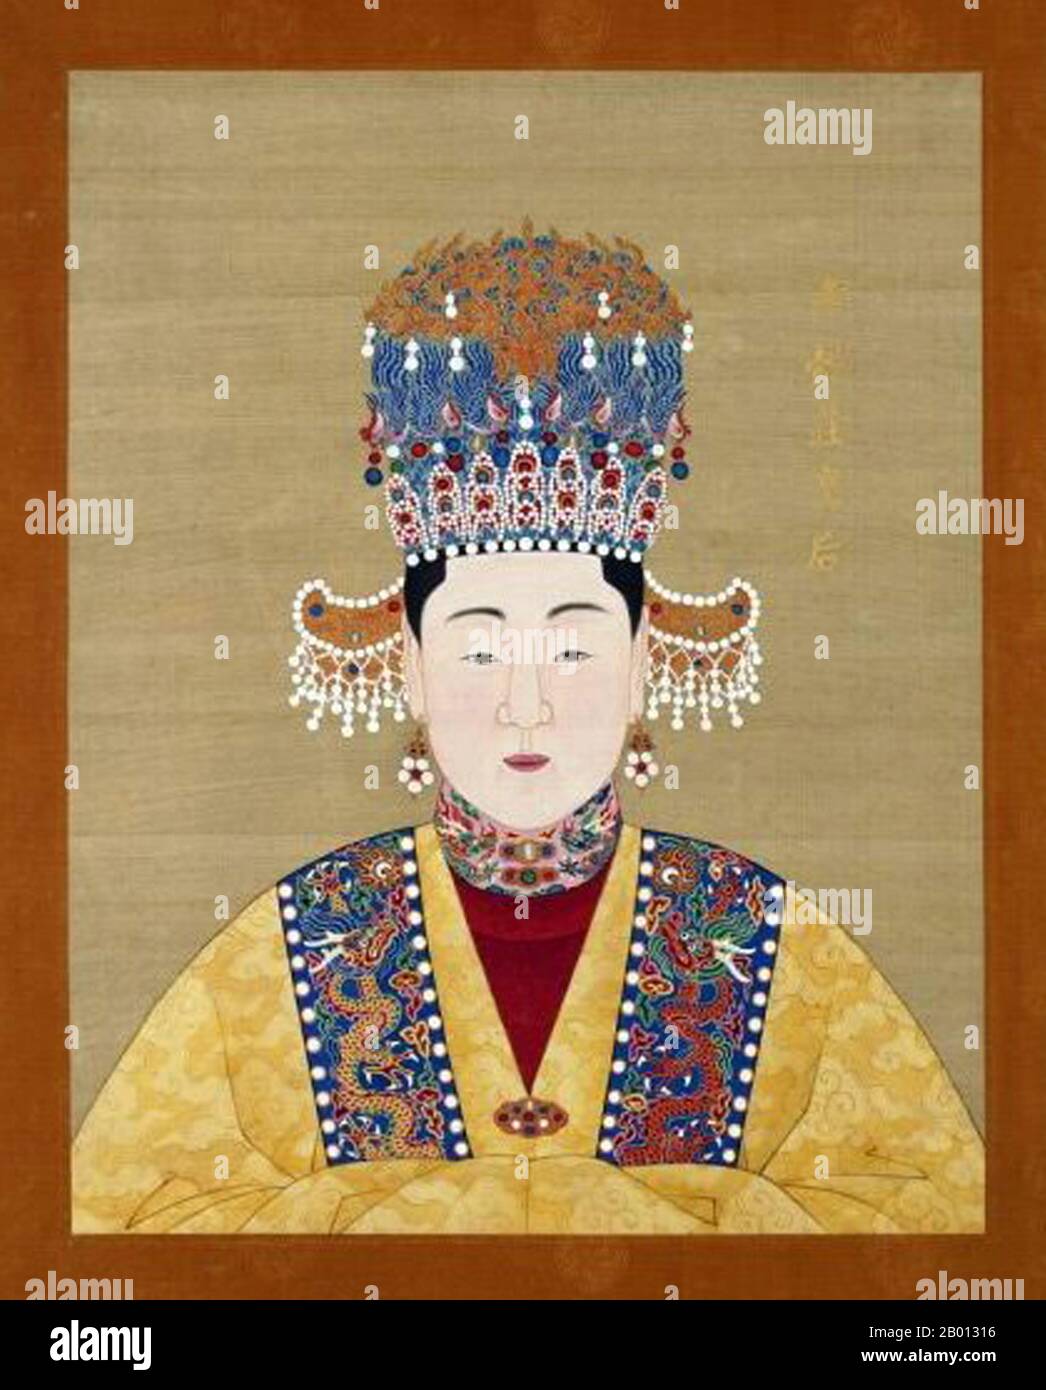 Cina: Imperatrice Xiao Yi Zhuang (-1558), consorte del 13° imperatore Ming Longqing (r. 1567-1572). Pittura a chiocciola sospesa, XVI-XVII secolo. L'imperatrice Xiaoyizhuang fu la prima consorte dell'Imperatore Longqing della Dinastia Ming. Sposò l'imperatore nel 1553 e gli partorì tre figli, ma morì nel 1558. Foto Stock